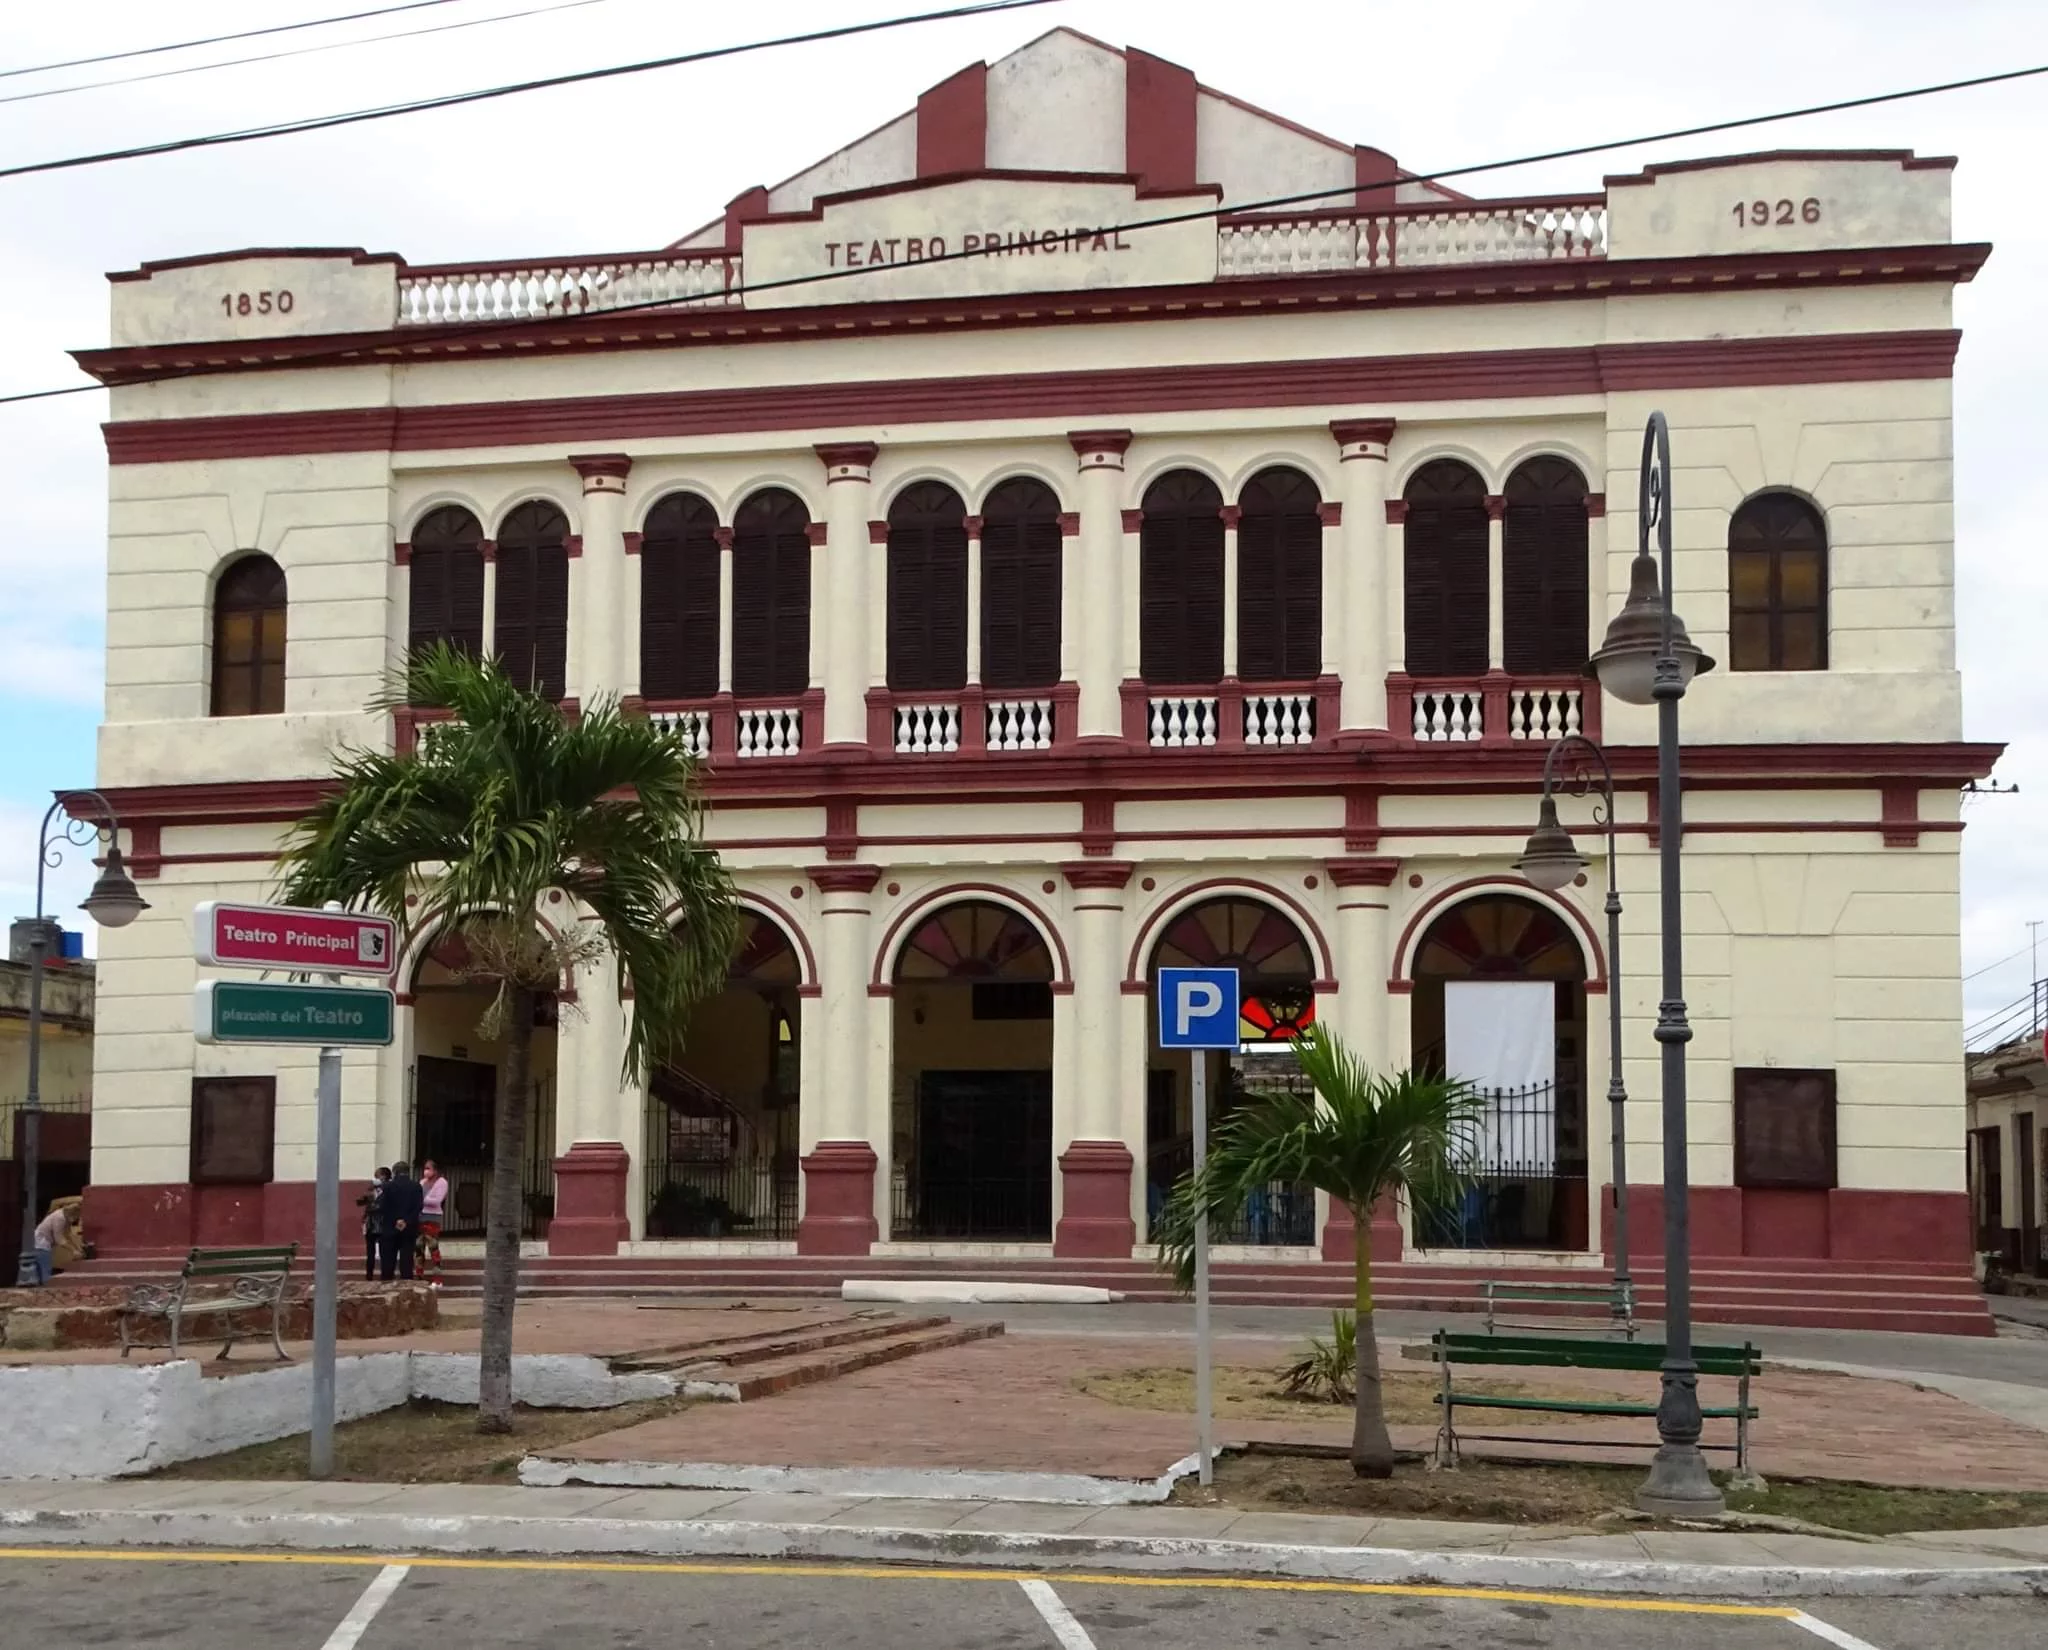 Teatro Principal de Camagüey